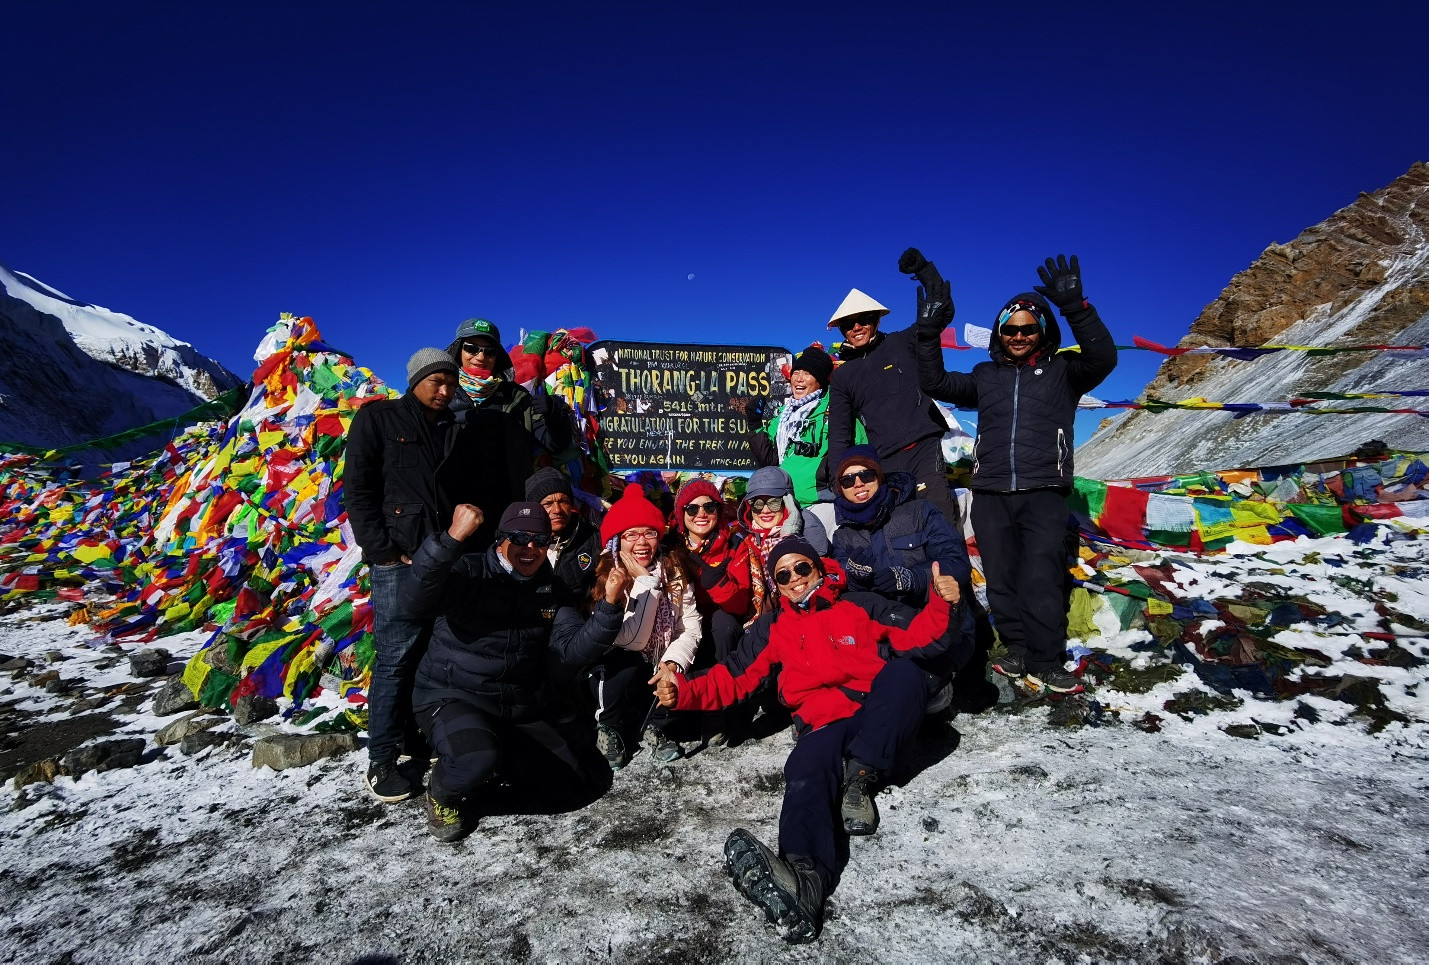 Trekking 14 ngày lên đỉnh Thorong La tuyết trắng: 5.416m, chúng tôi đến rồi đây! - 18